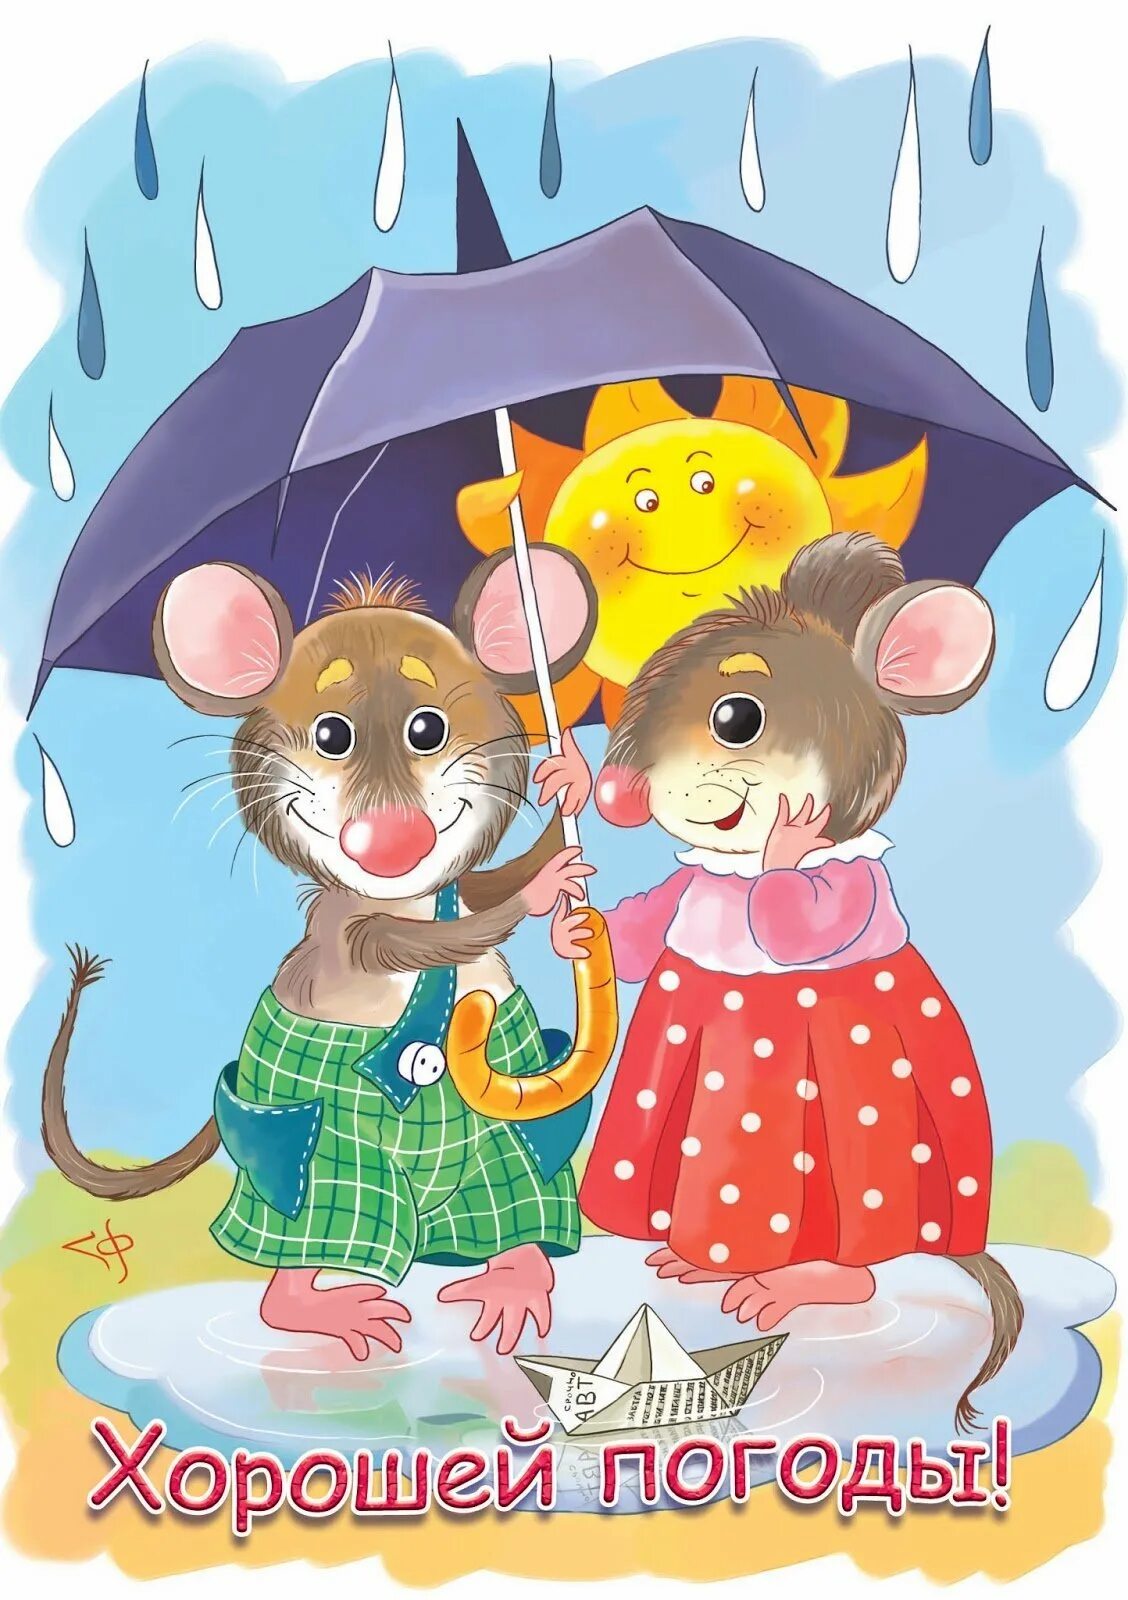 Мышь под зонтом. Мышка с зонтиком. Открытки хорошего настроения в дождливую погоду. Мышь с зонтом. Невзирая на погоду